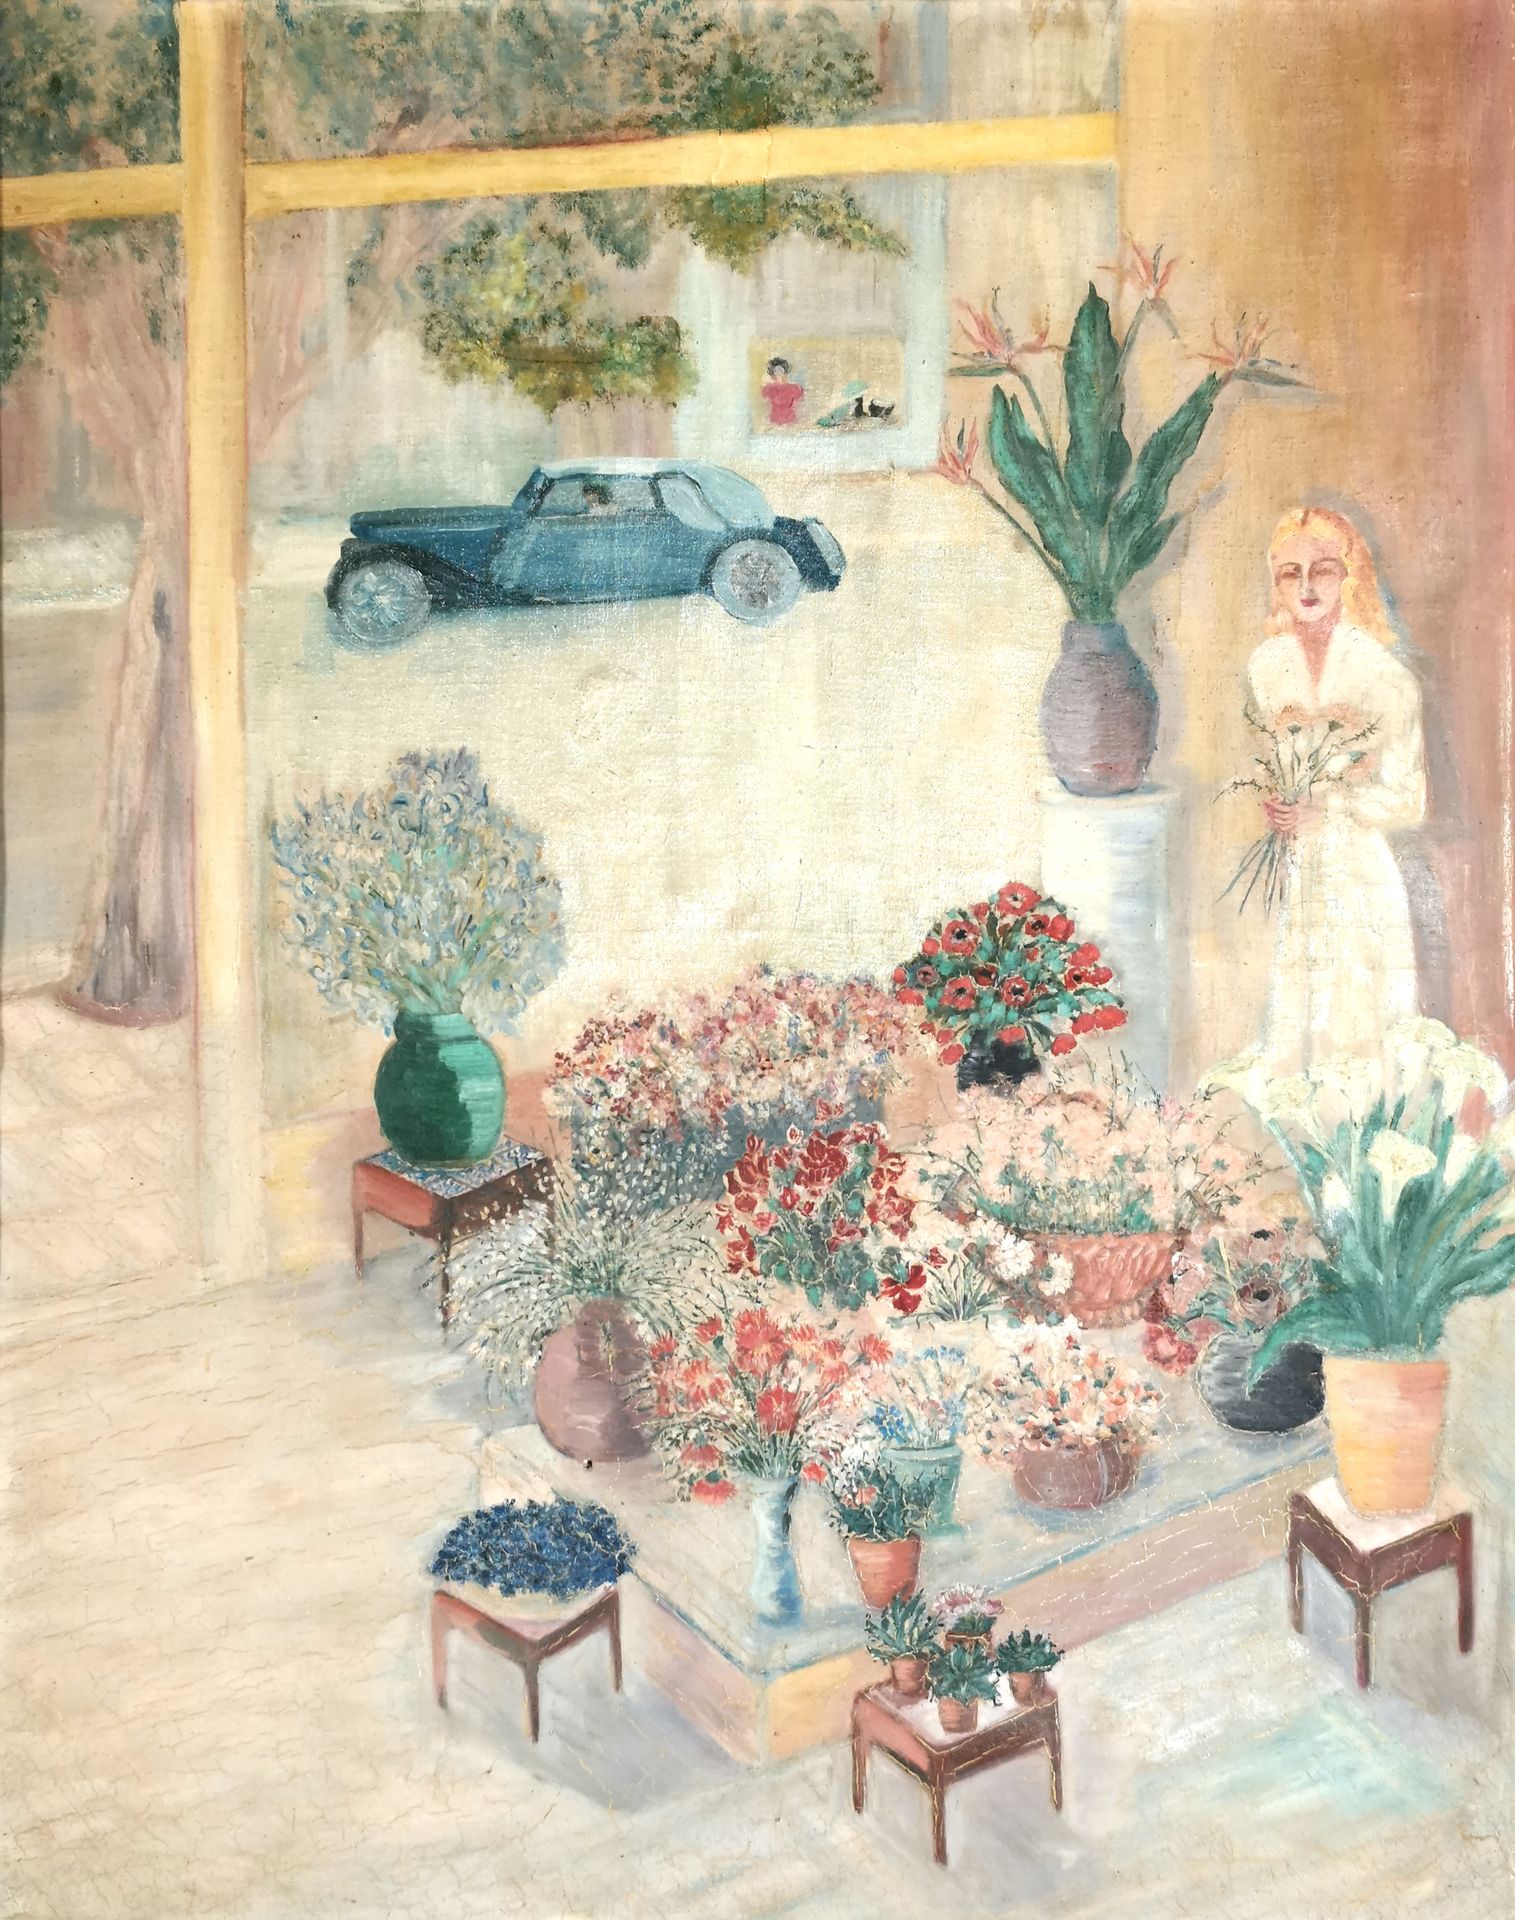 Null Schule des 20. Jahrhunderts

Die Blumenhändlerin

Öl auf Leinwand 

88 x 70&hellip;